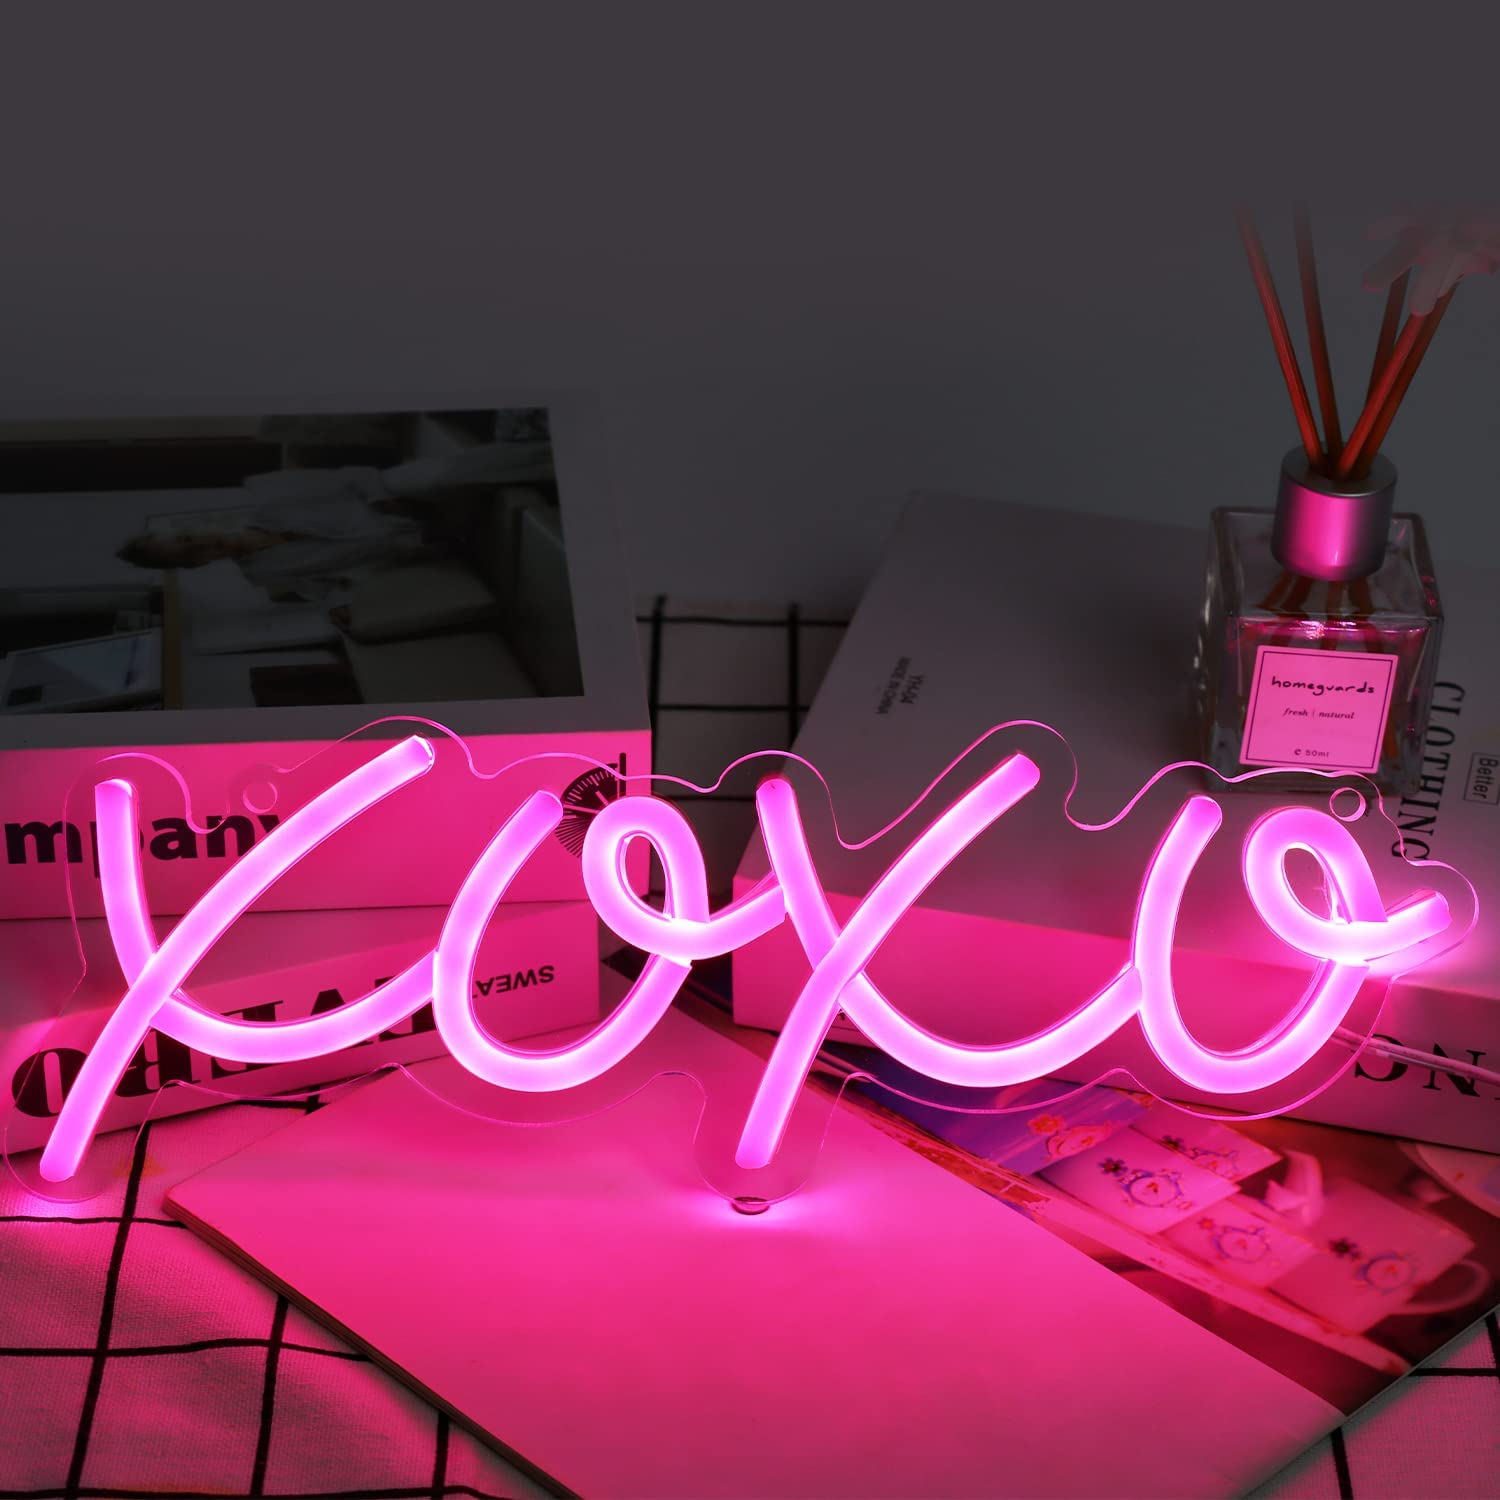 NEONIP-100% Insegna luminosa al neon XOXO LED fatta a mano